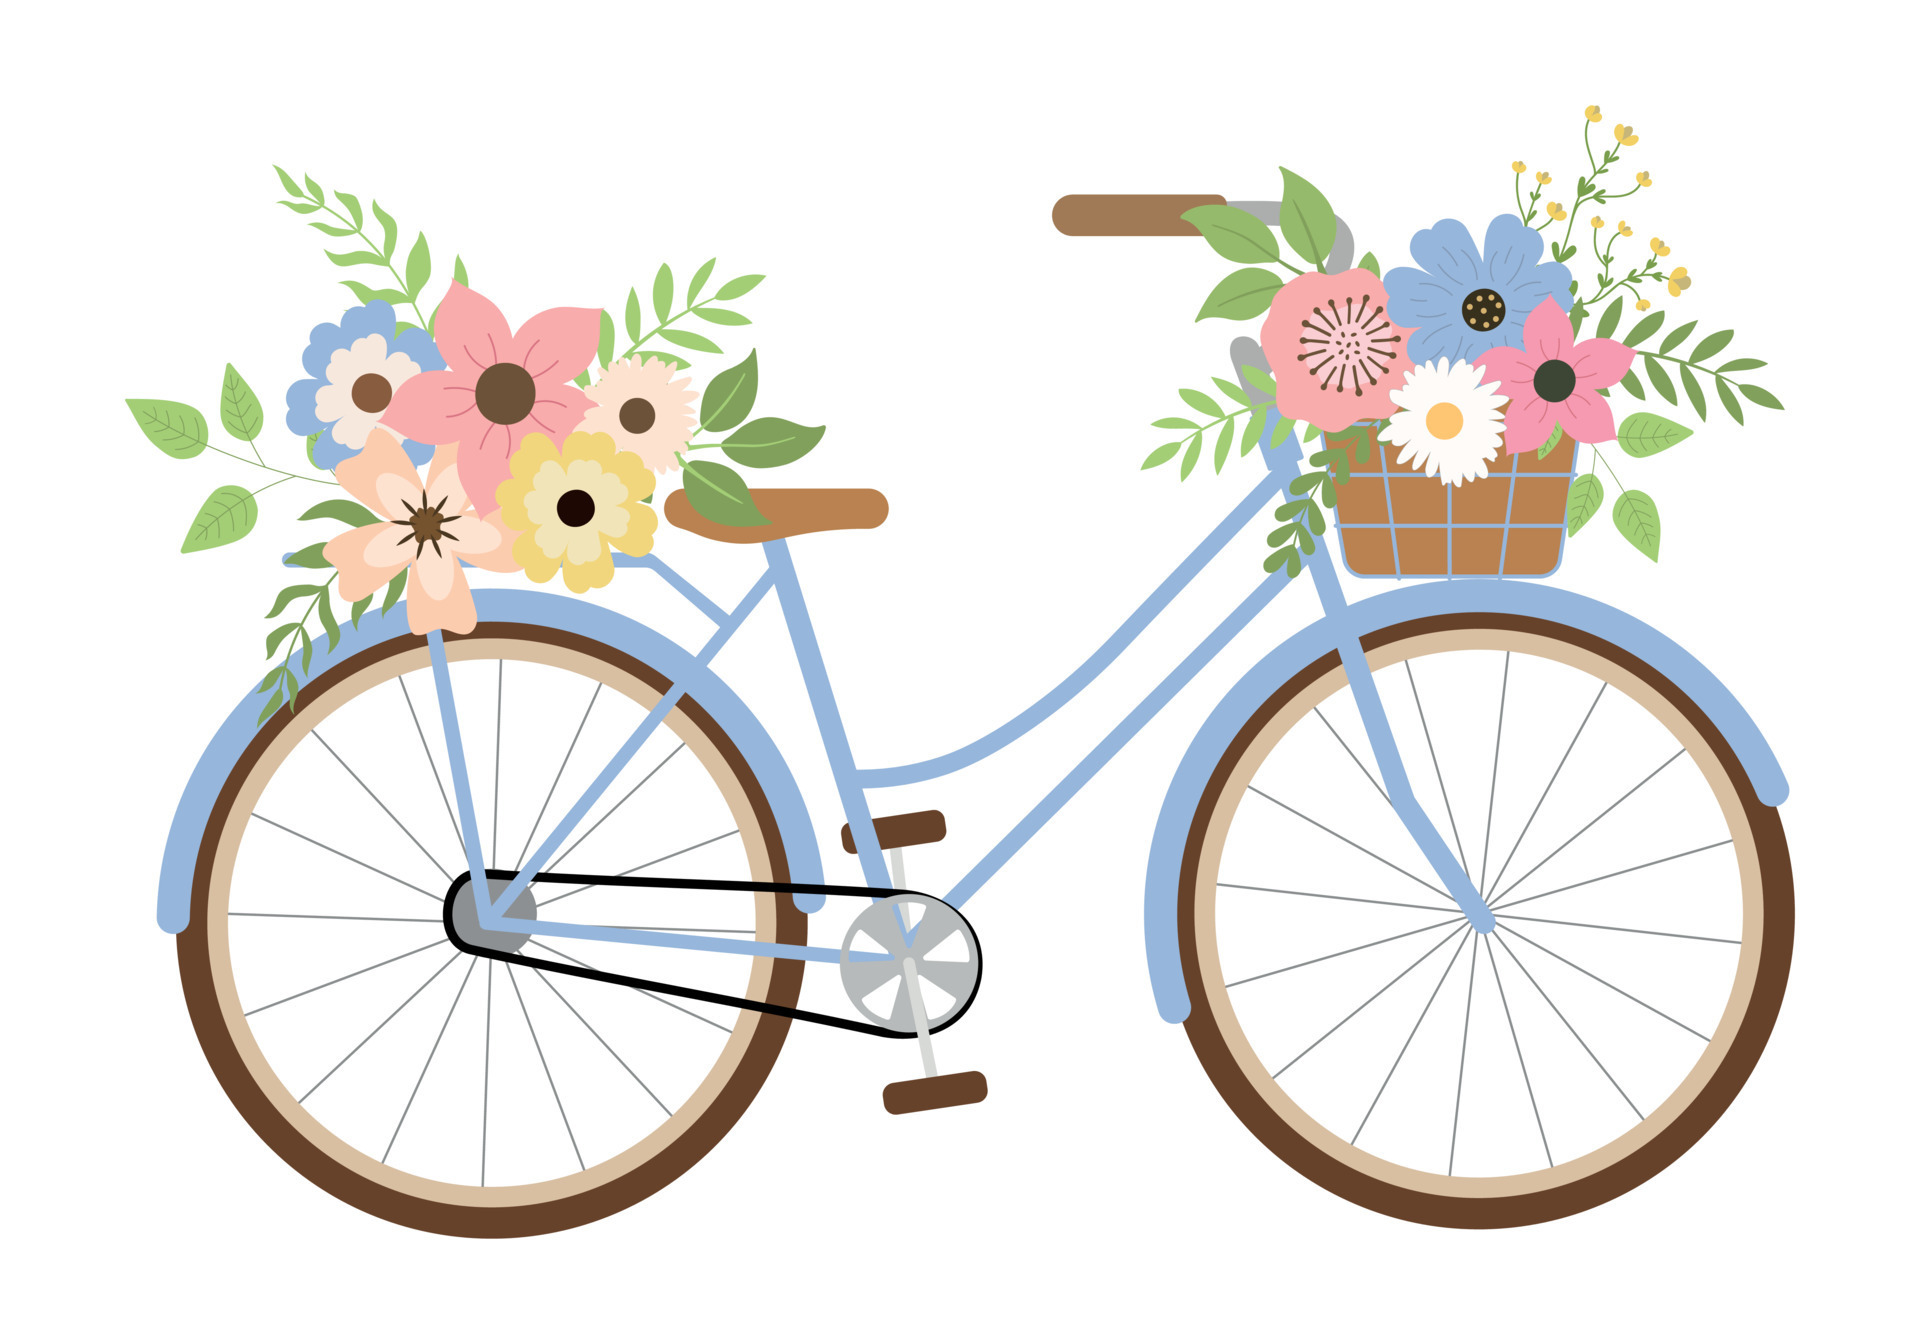 Peinte en bleu vif, cette bicyclette s'habille d'un mélange de fleurs  champêtres pour apporter fraîcheur et originalité à …